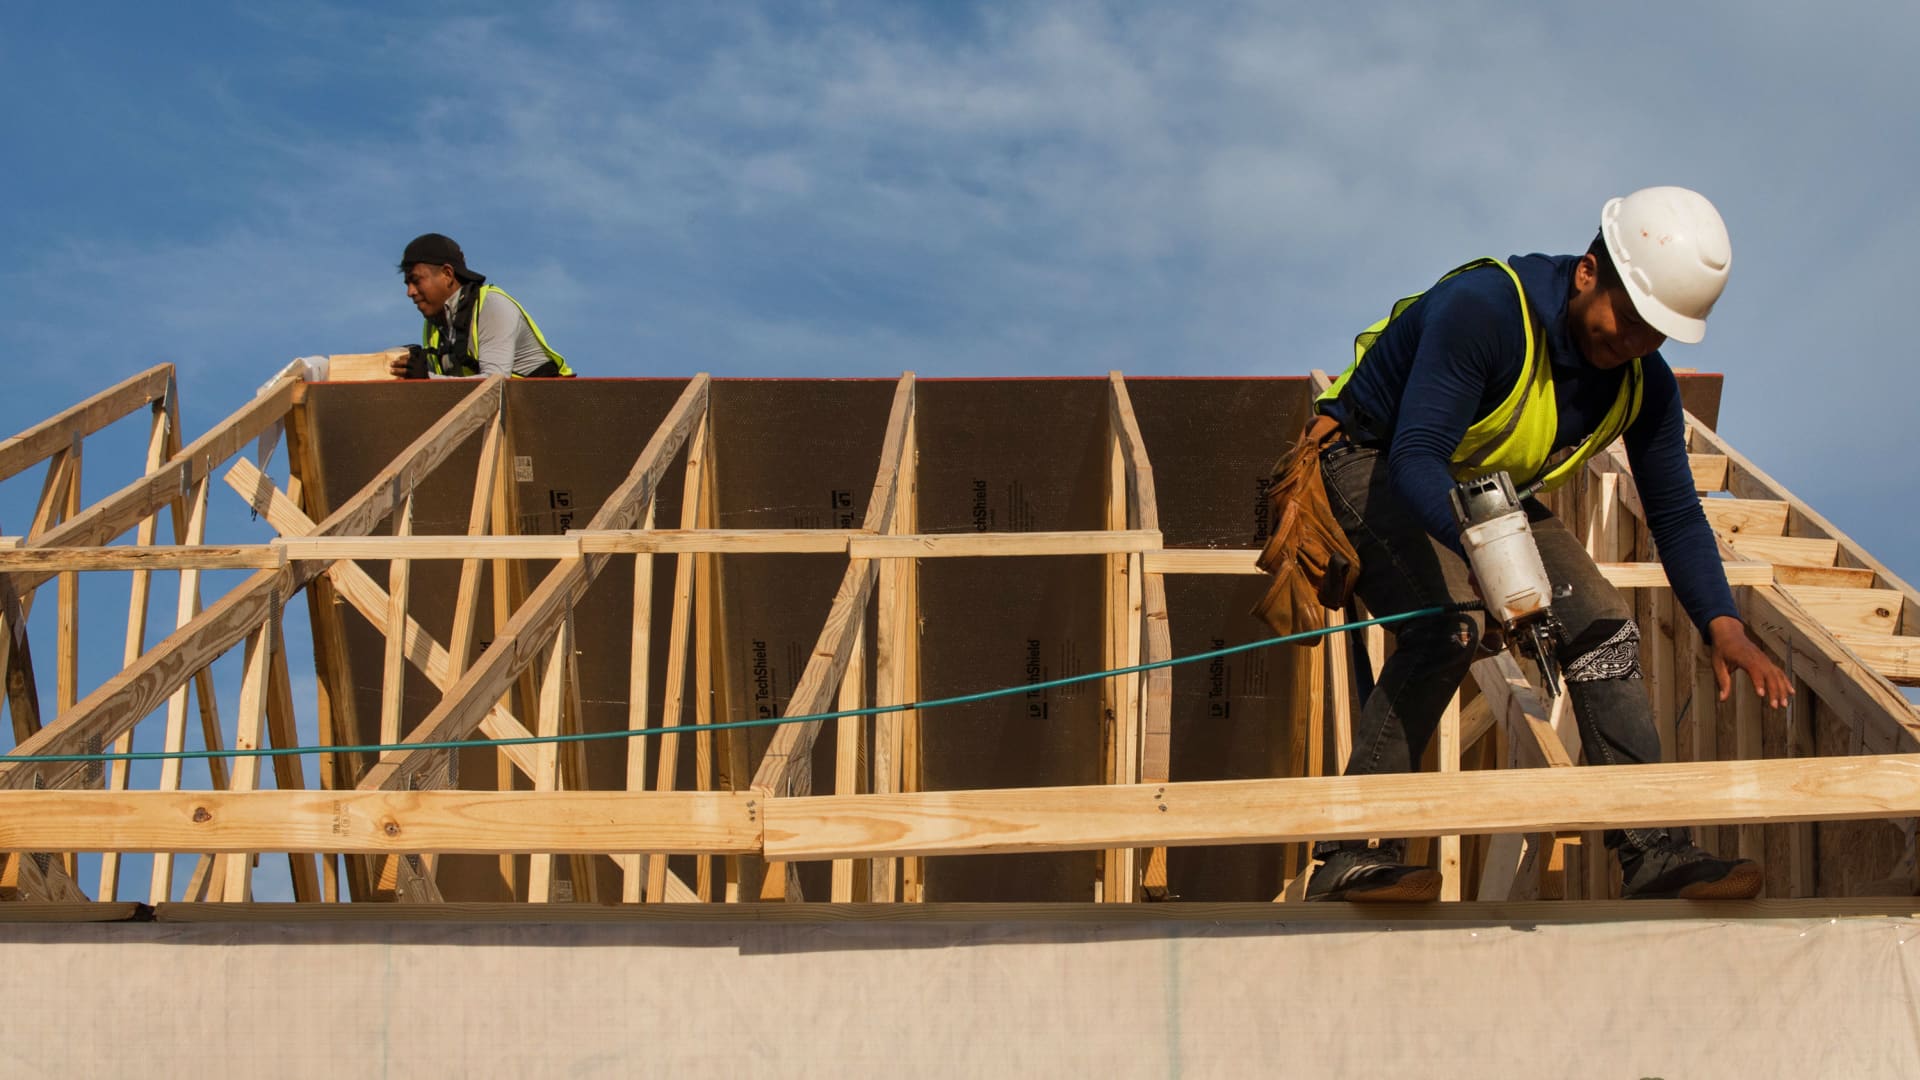 Los constructores de viviendas aumentan los incentivos porque de repente tienen dificultades para vender sus casas